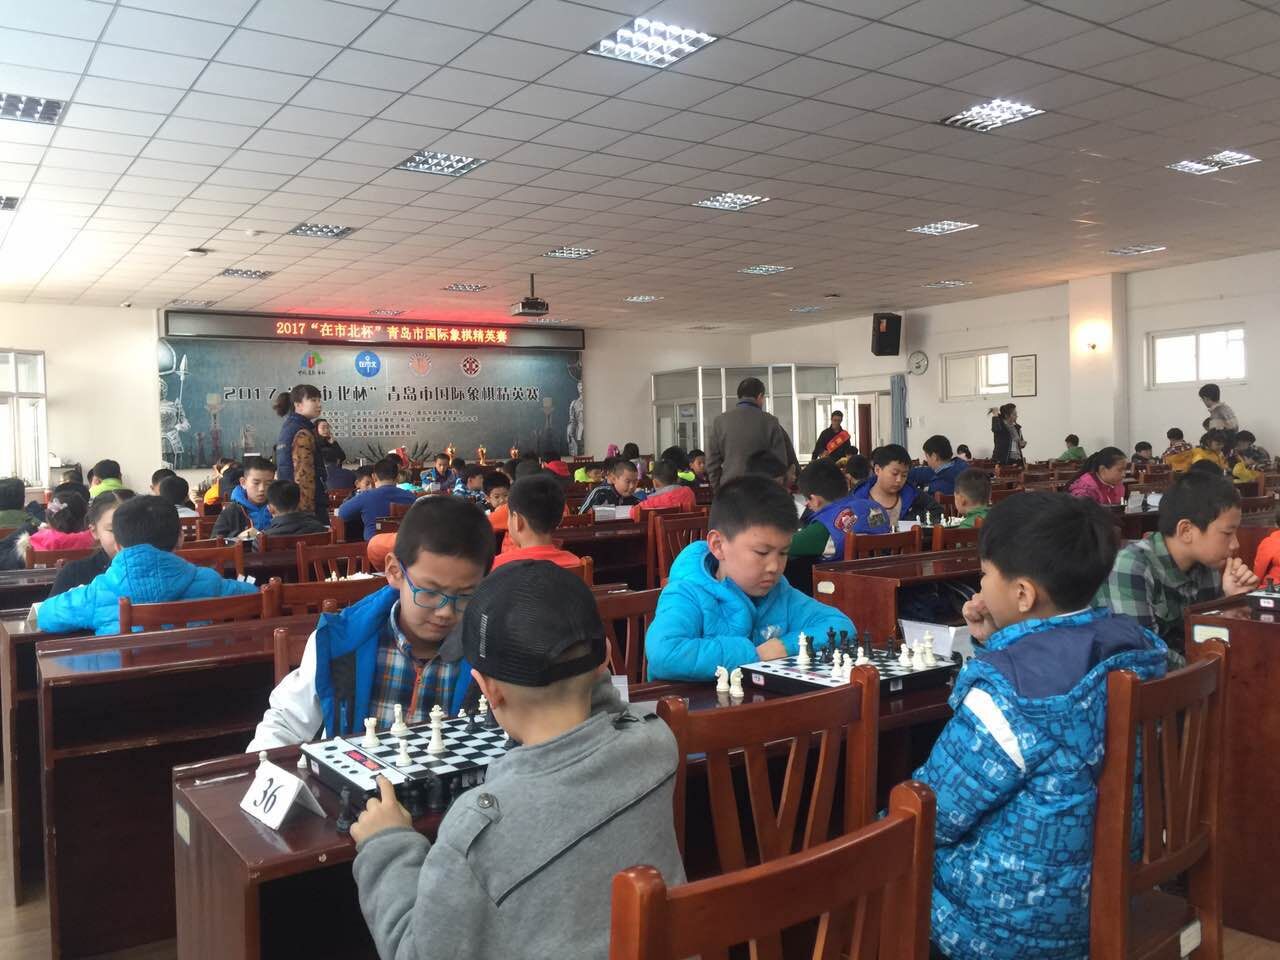 在市北杯国际象棋精英赛举行 120余名选手参